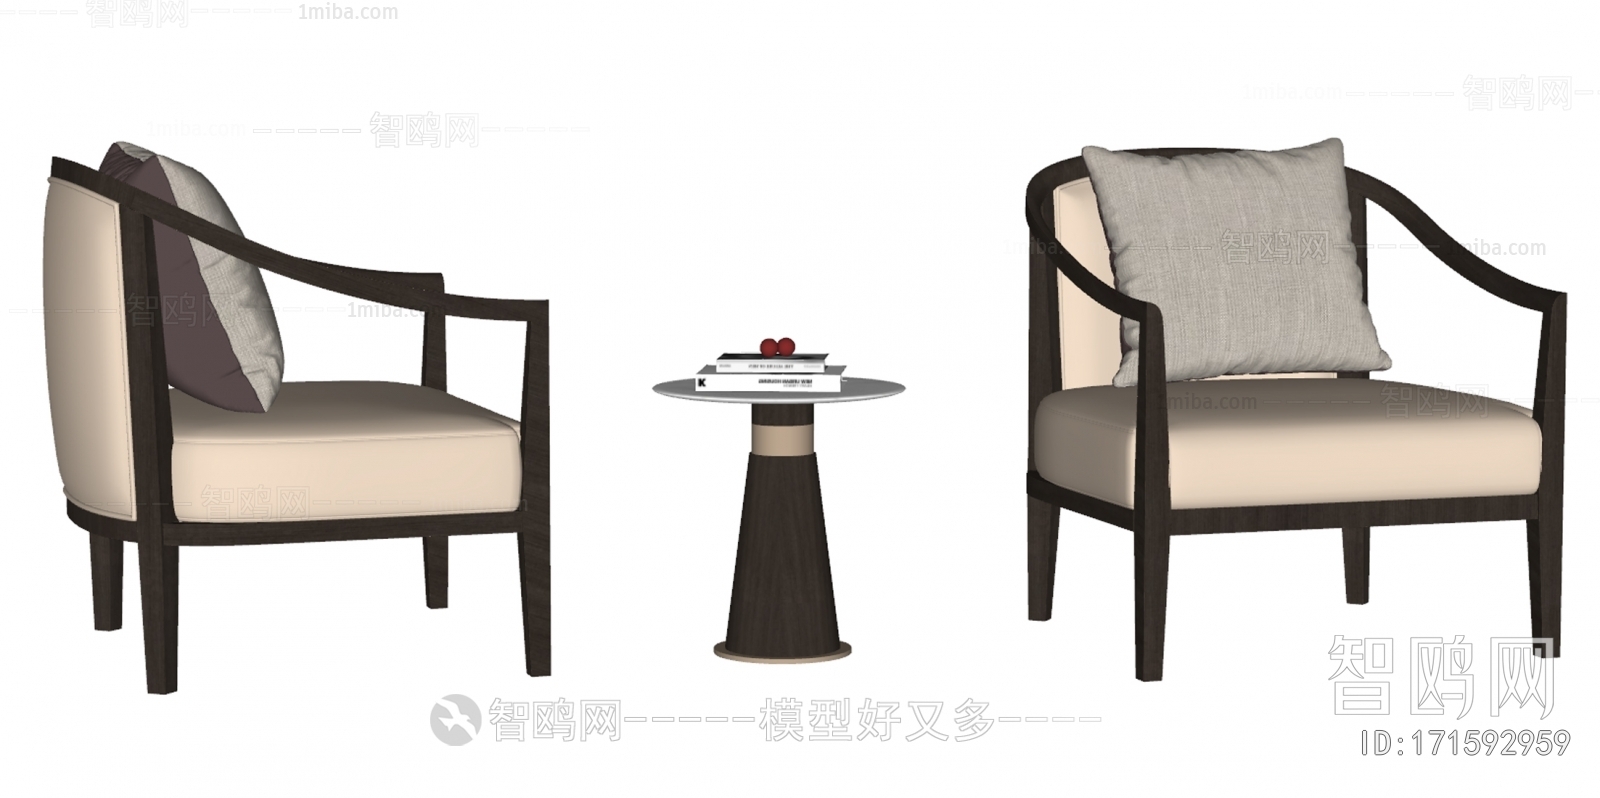 新中式休闲椅 茶几